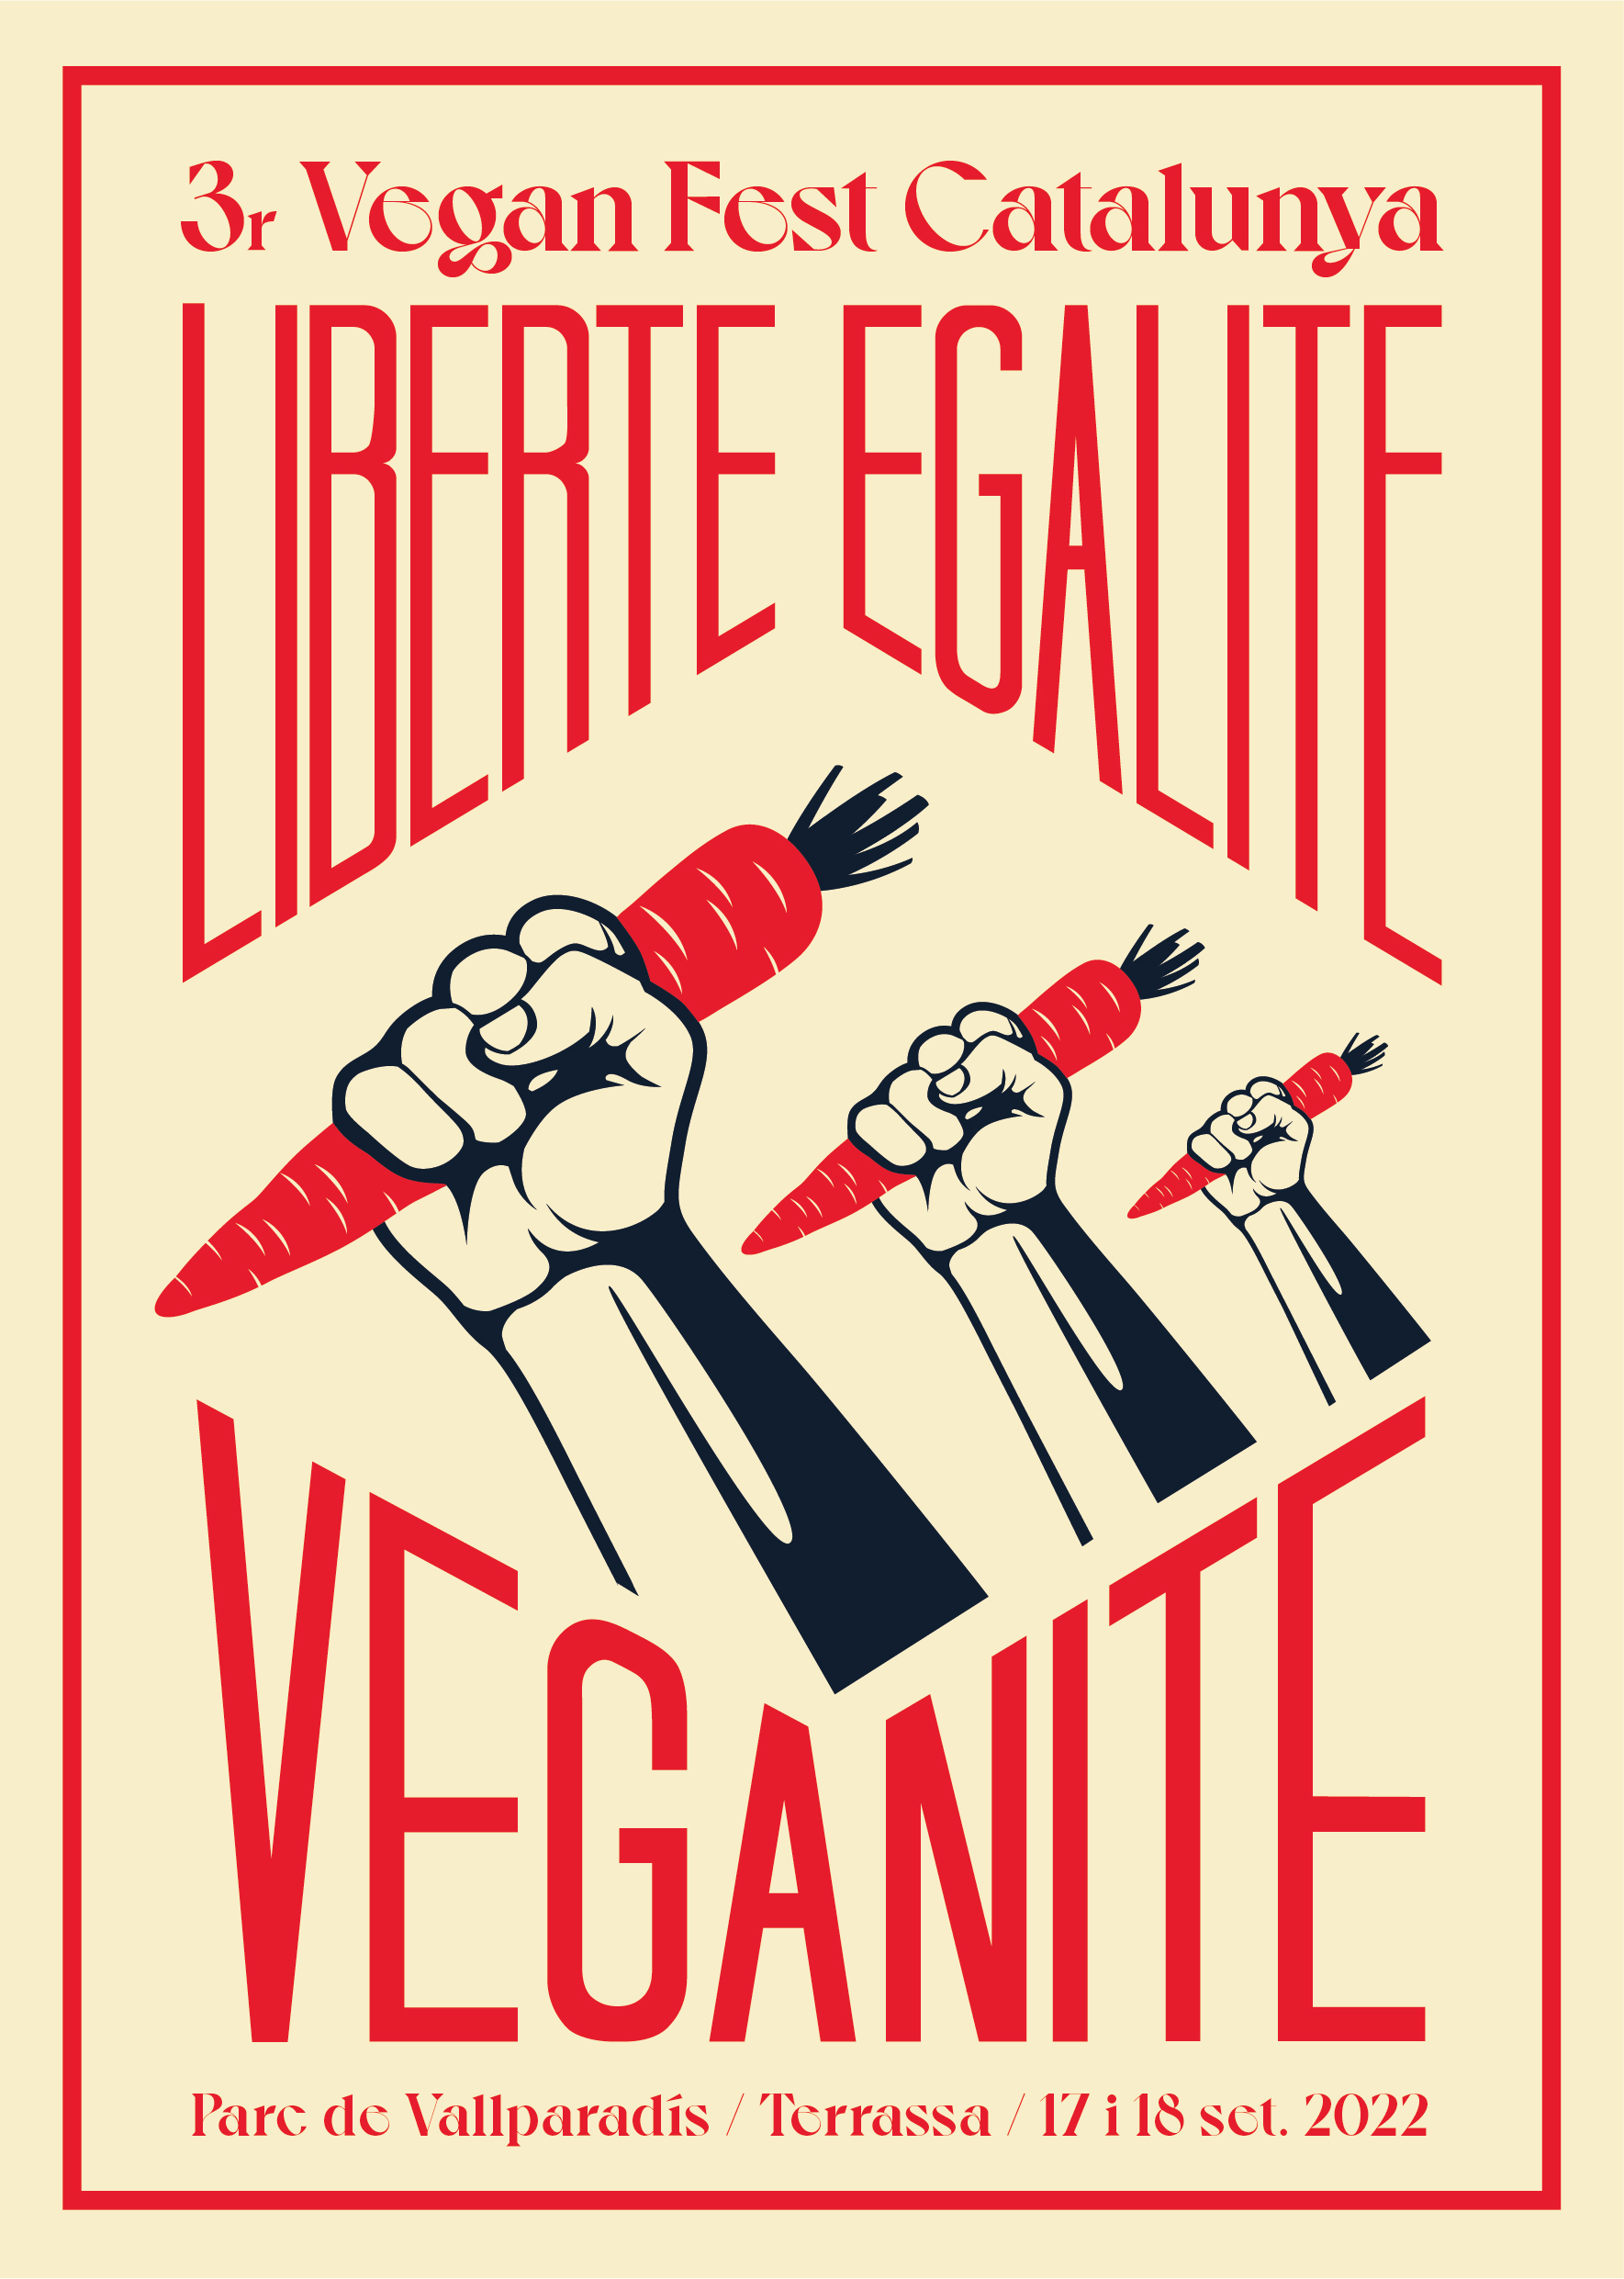 Print Veganite_2